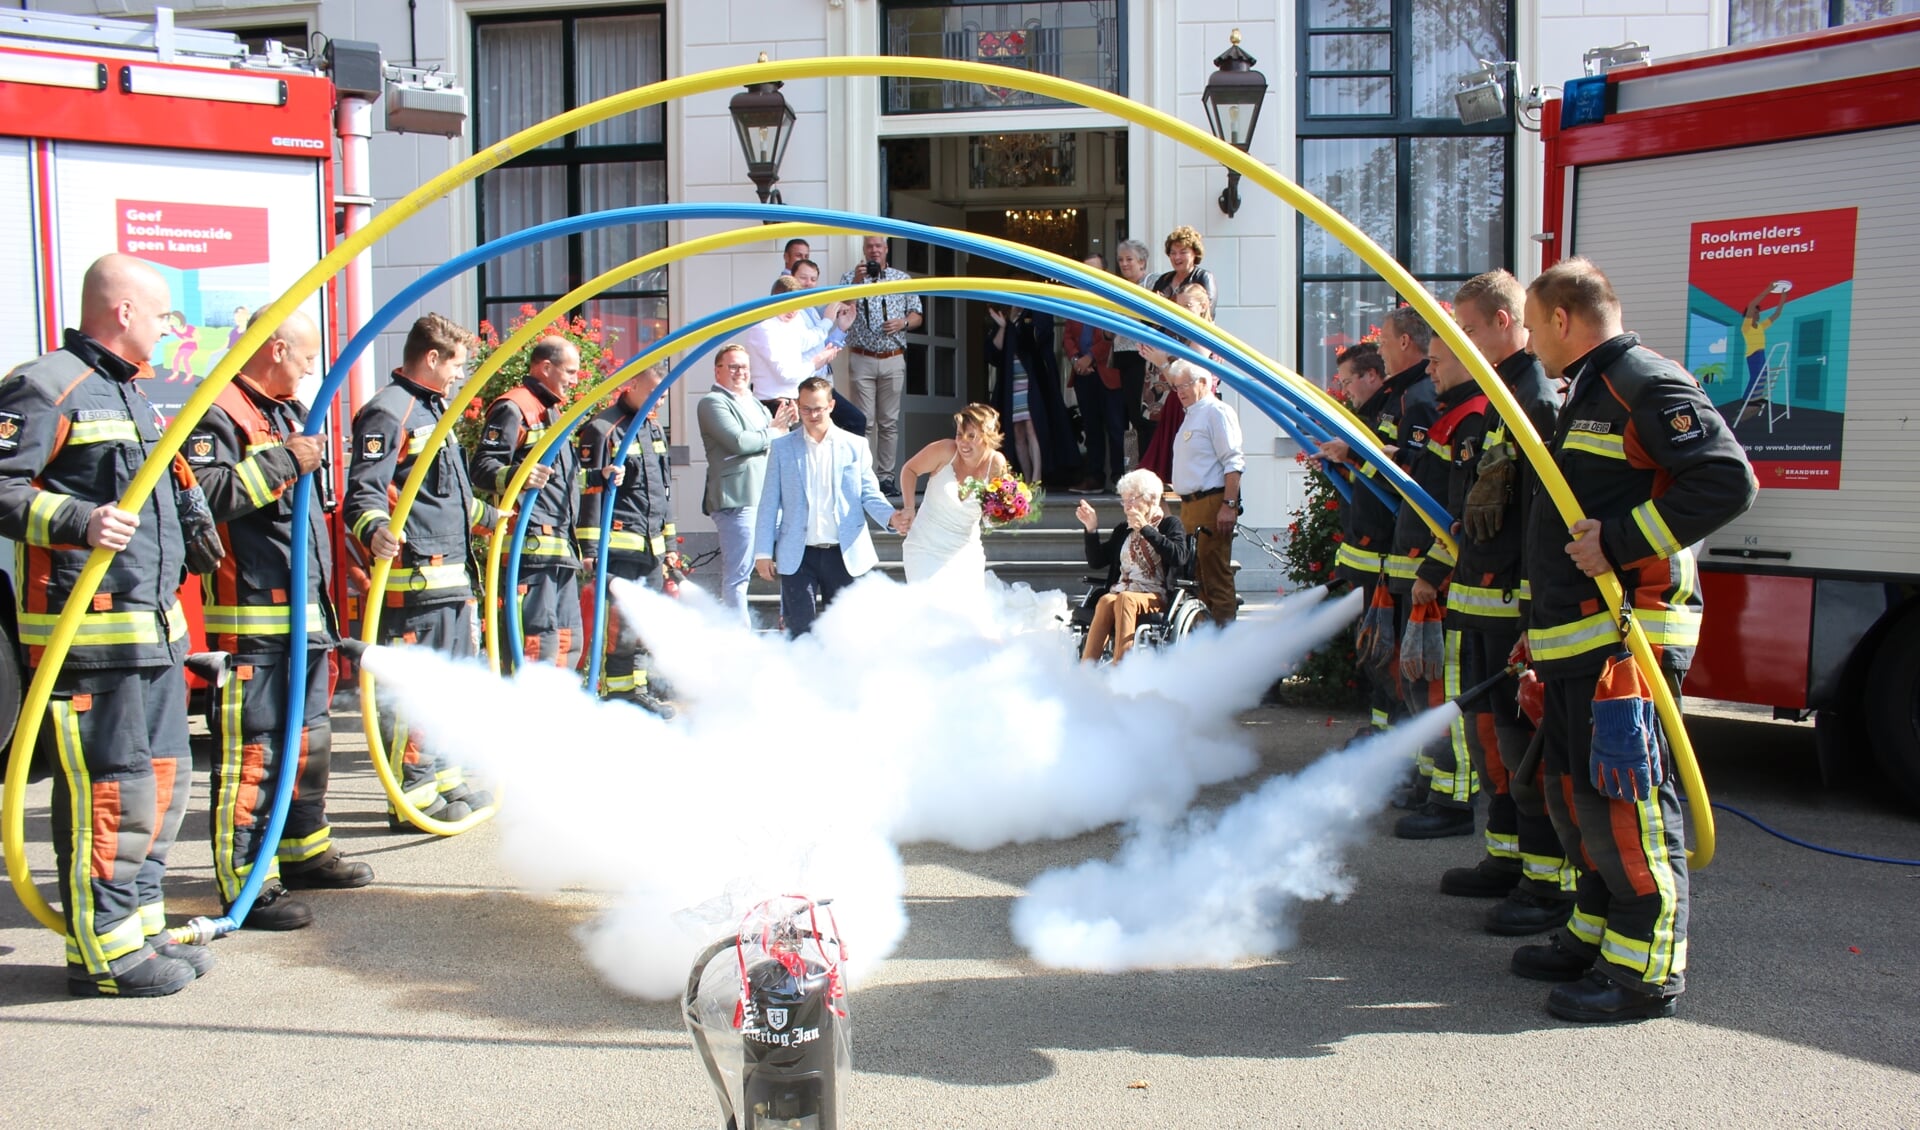 Het bruidspaar wordt met 'witte rook' verwelkomt. | Foto en tekst: AC.